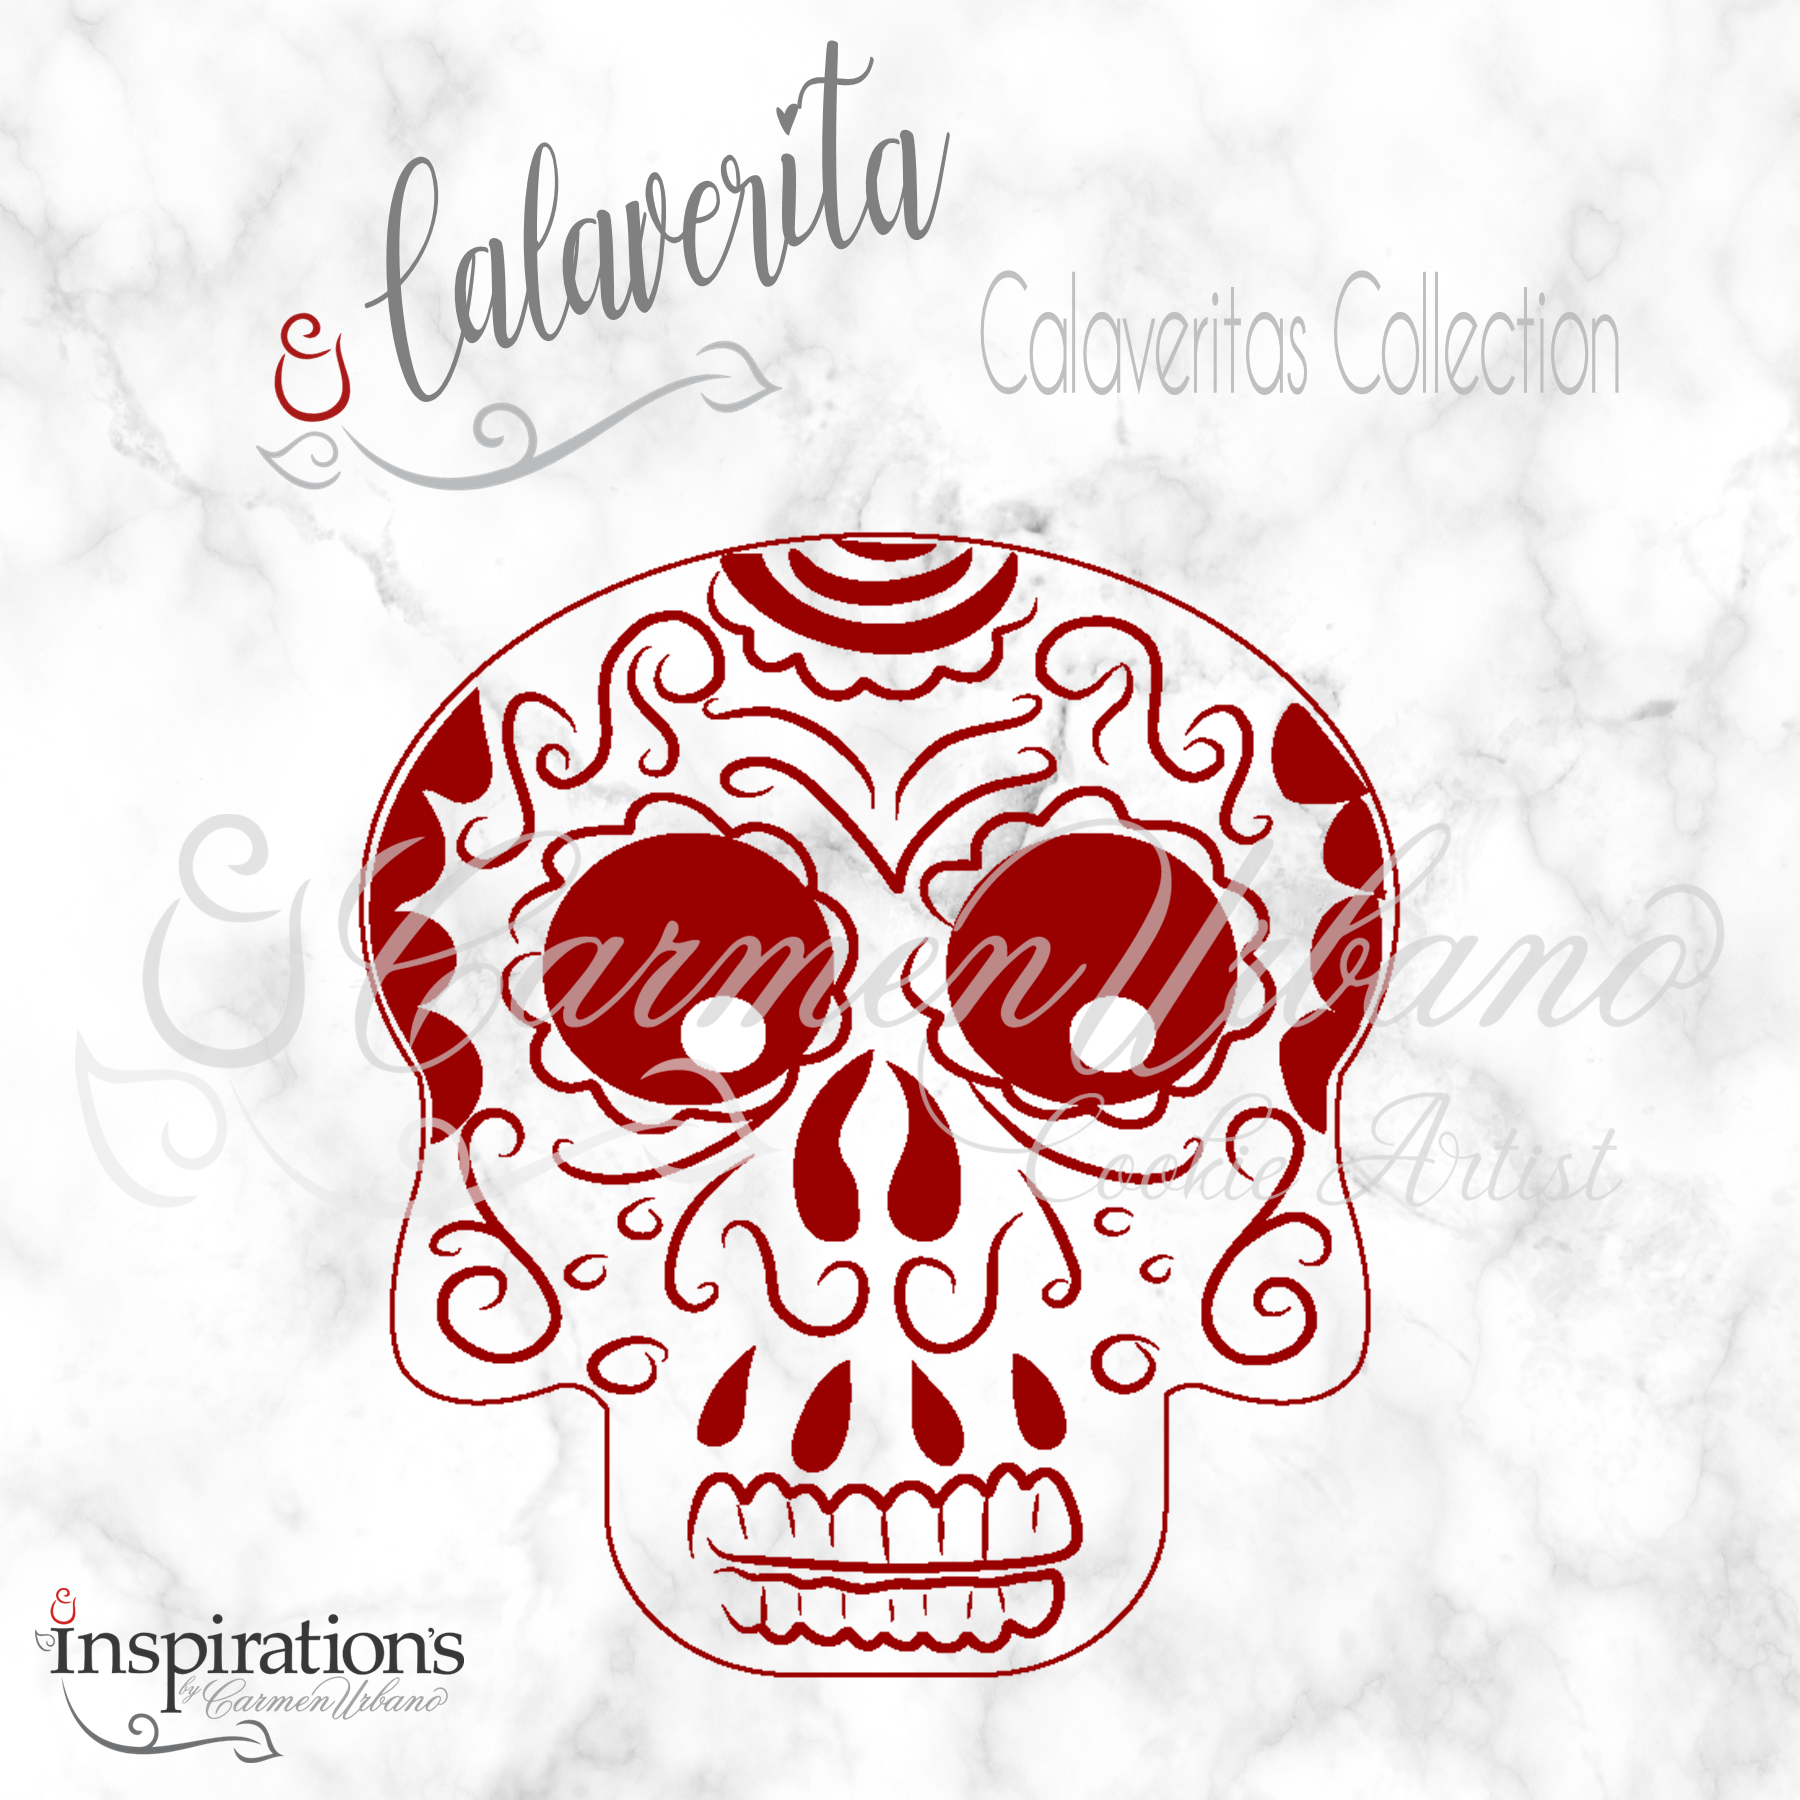 Calaverita – InspirationsByCarmenUrbano